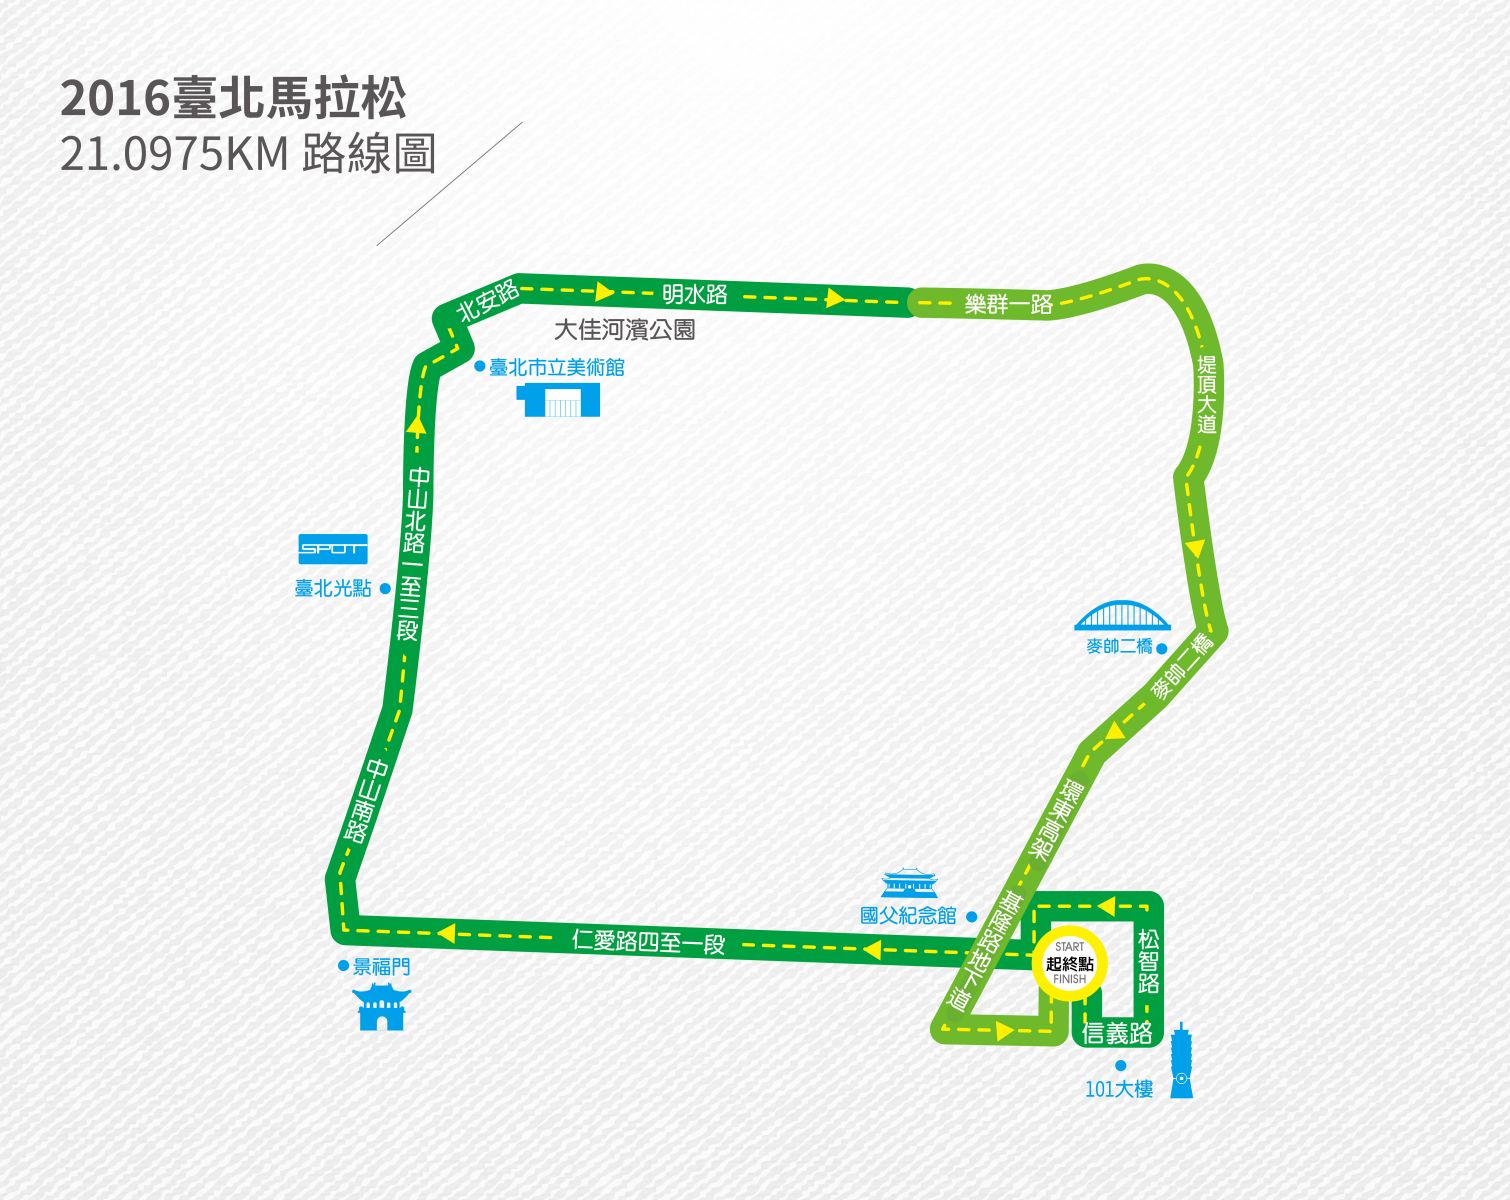 半程馬拉松路線更方便跑者。圖/台北市體育局提供